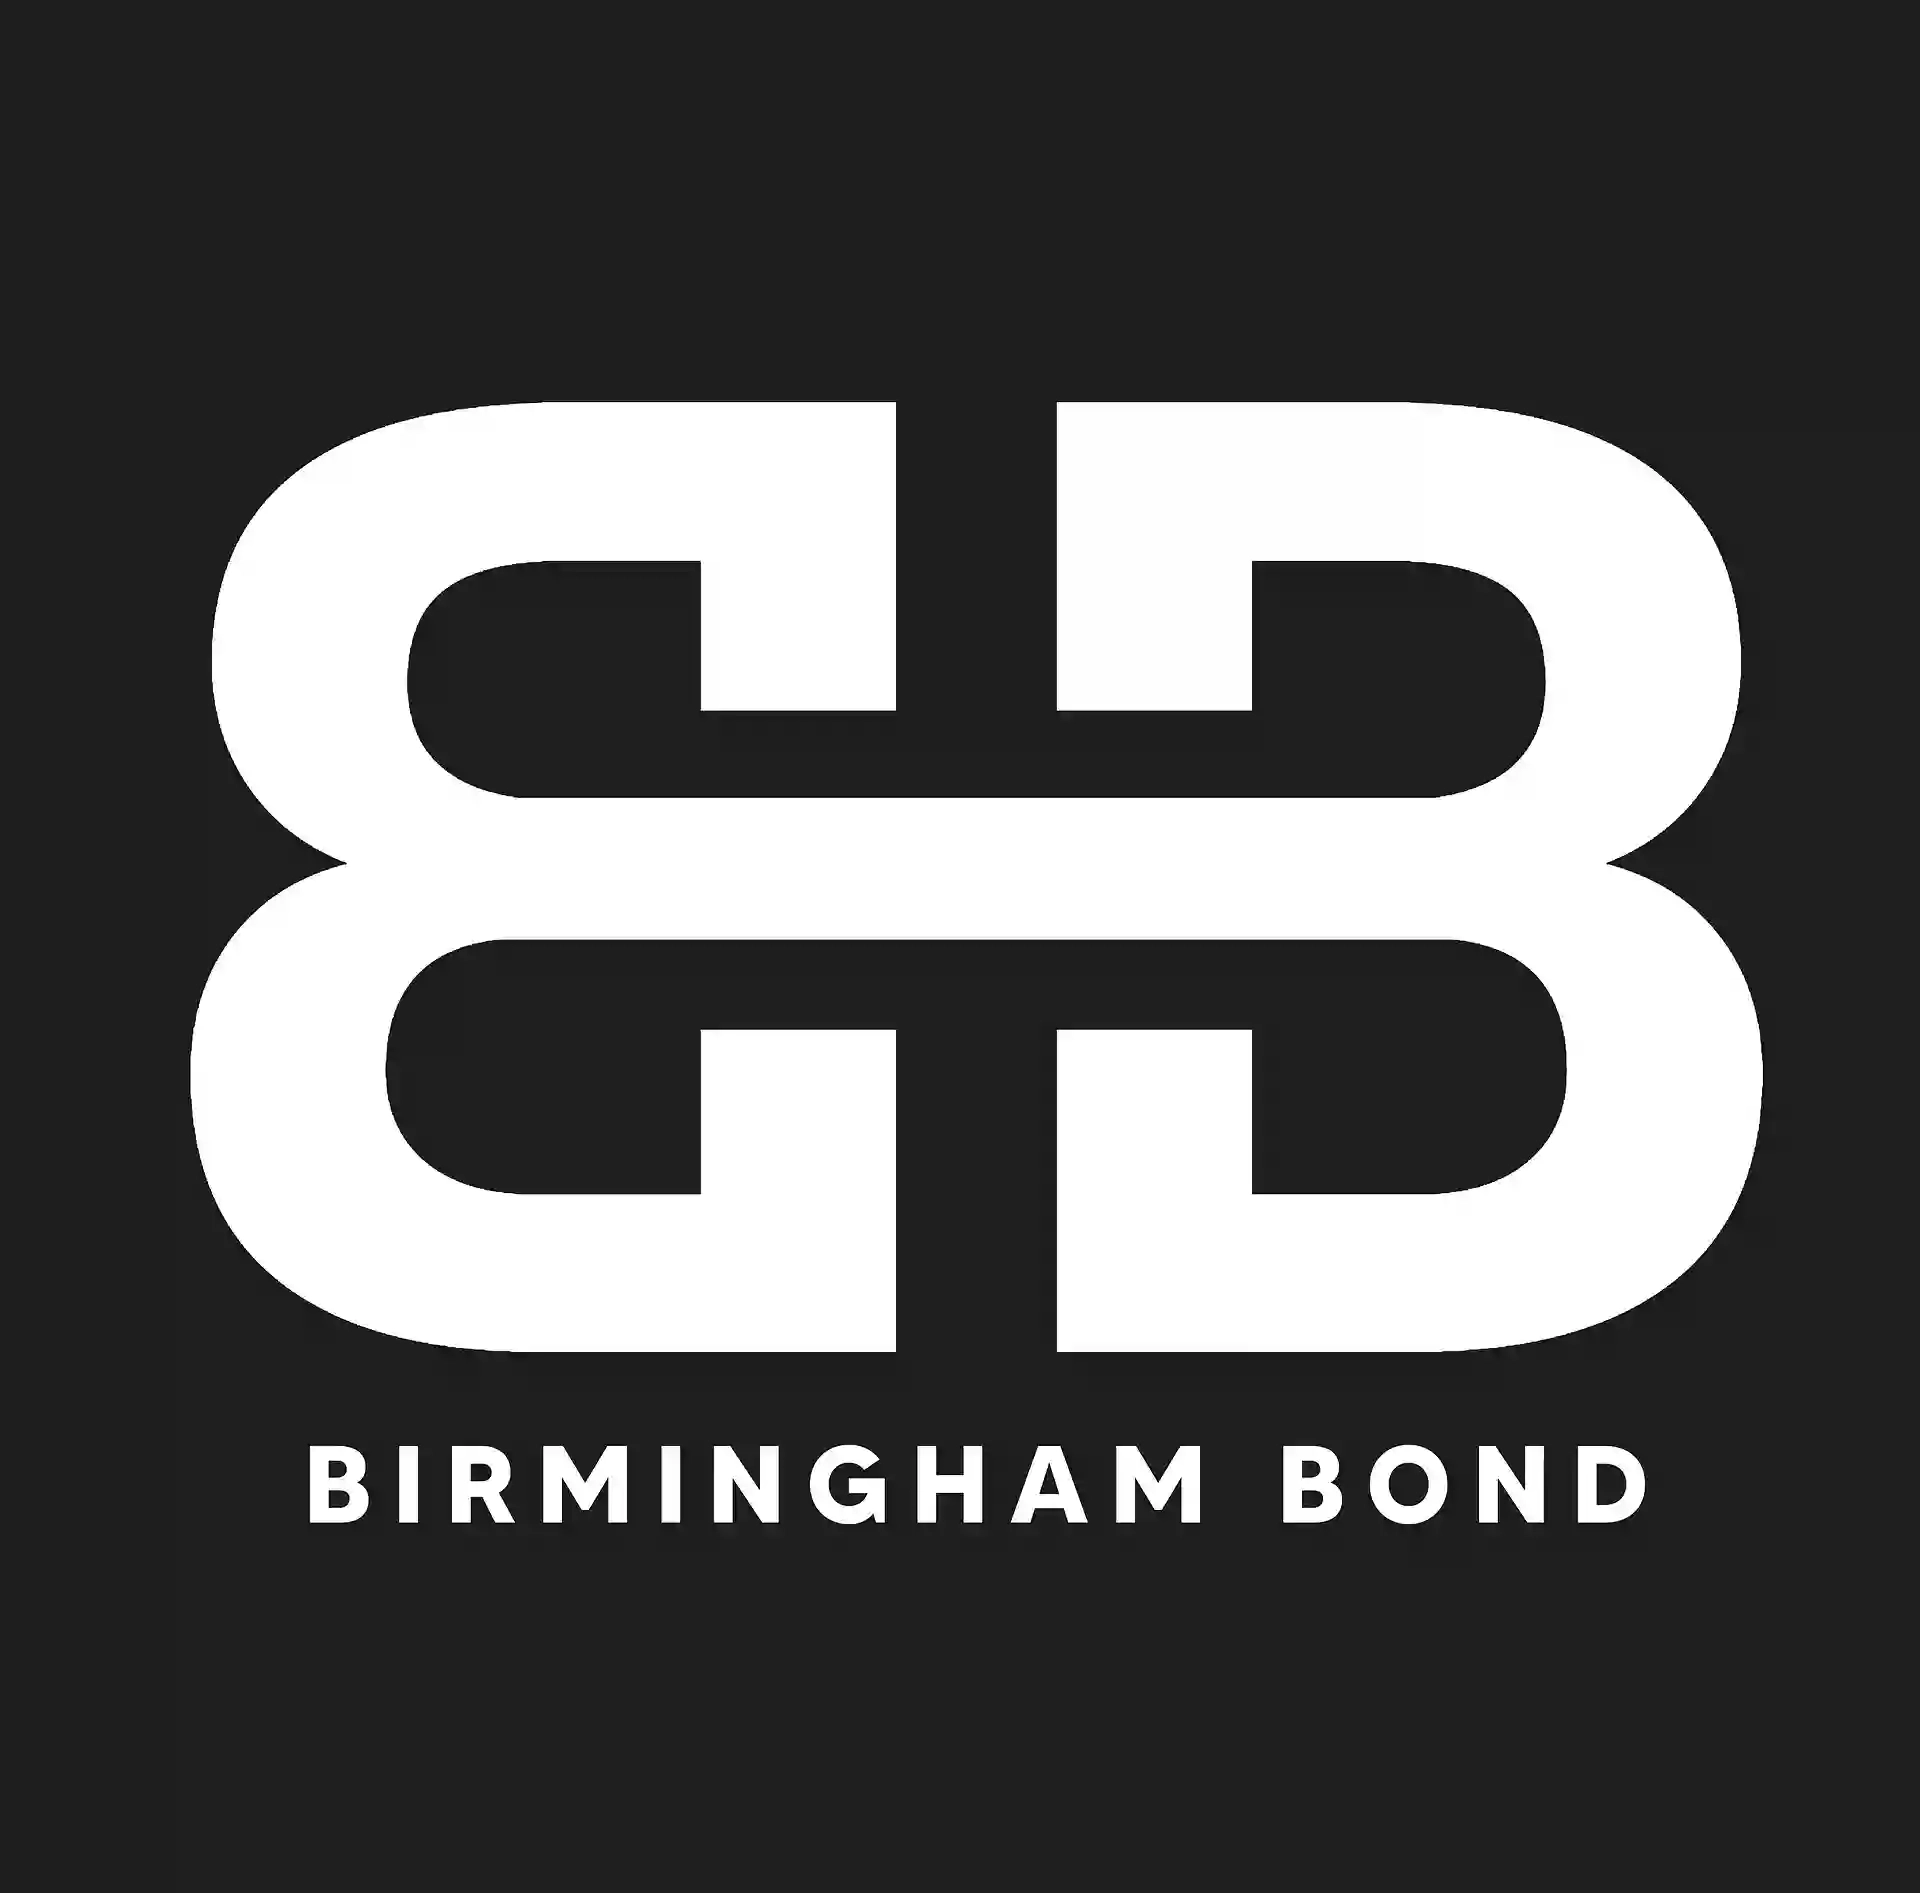 Birmingham Bond Ltd